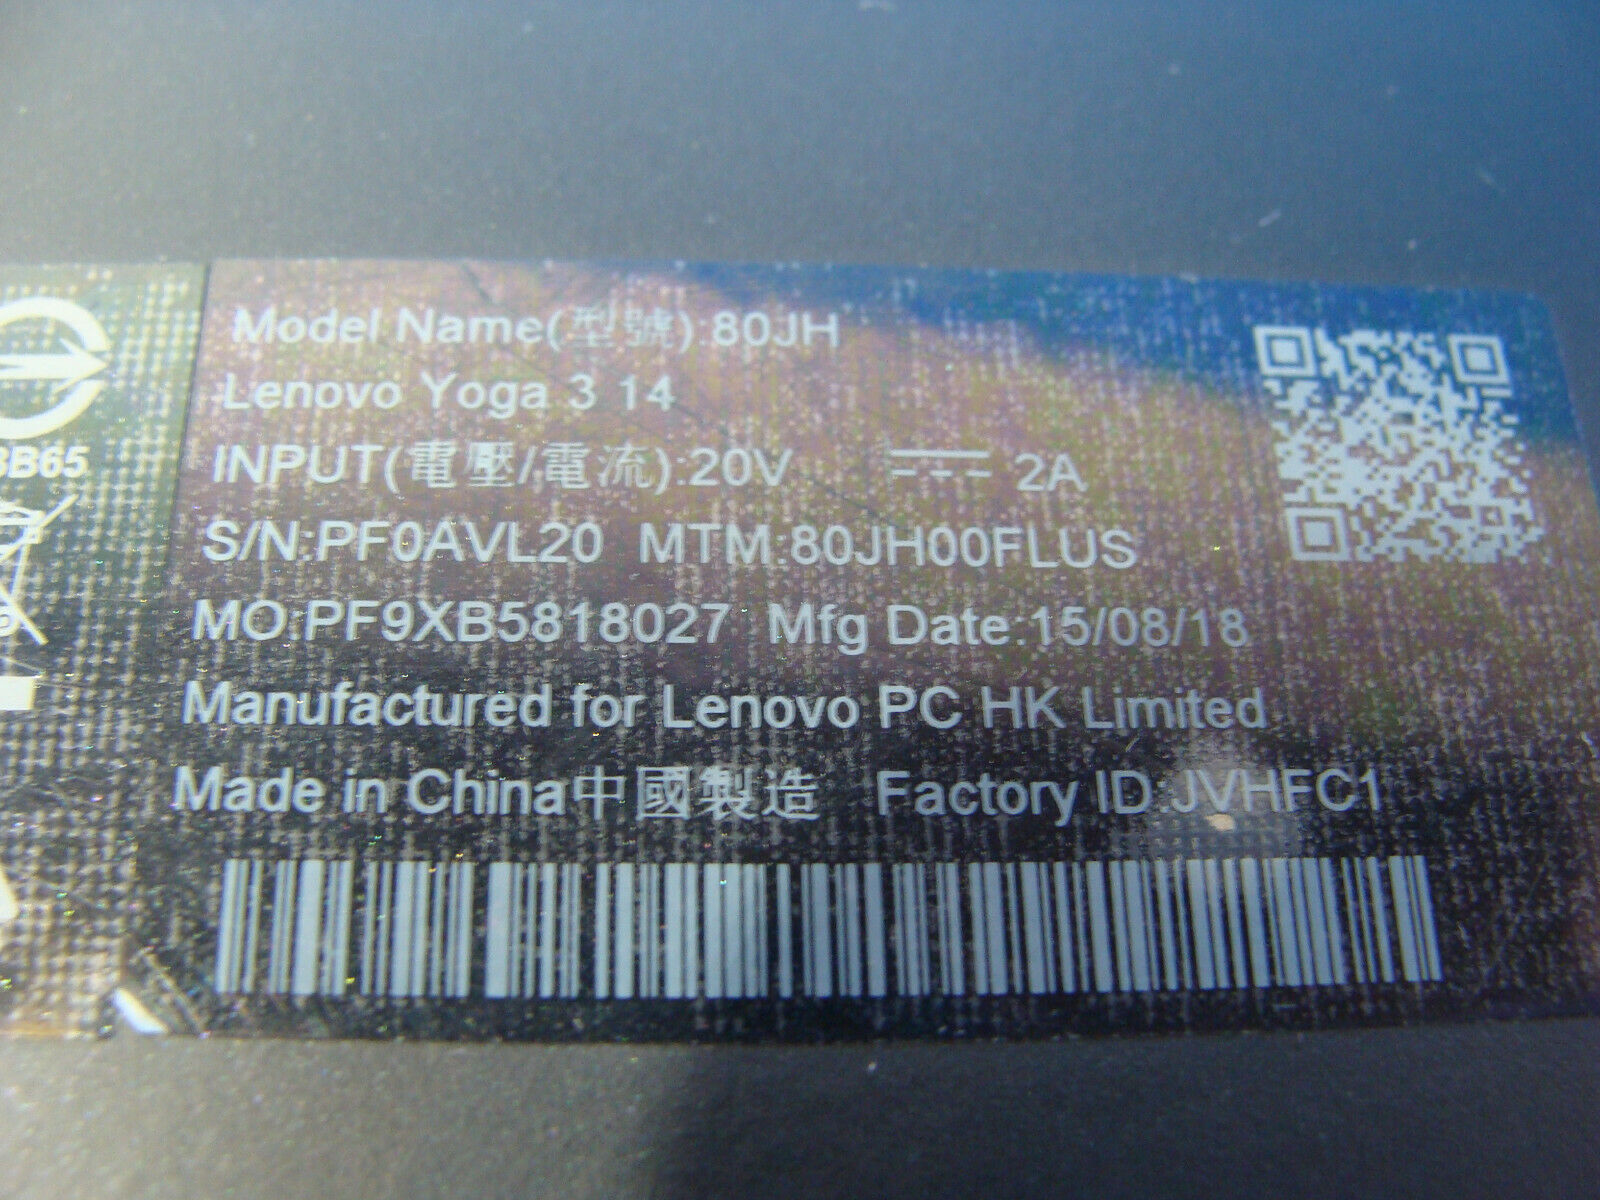 Lenovo Yoga 3 14 80JH 14